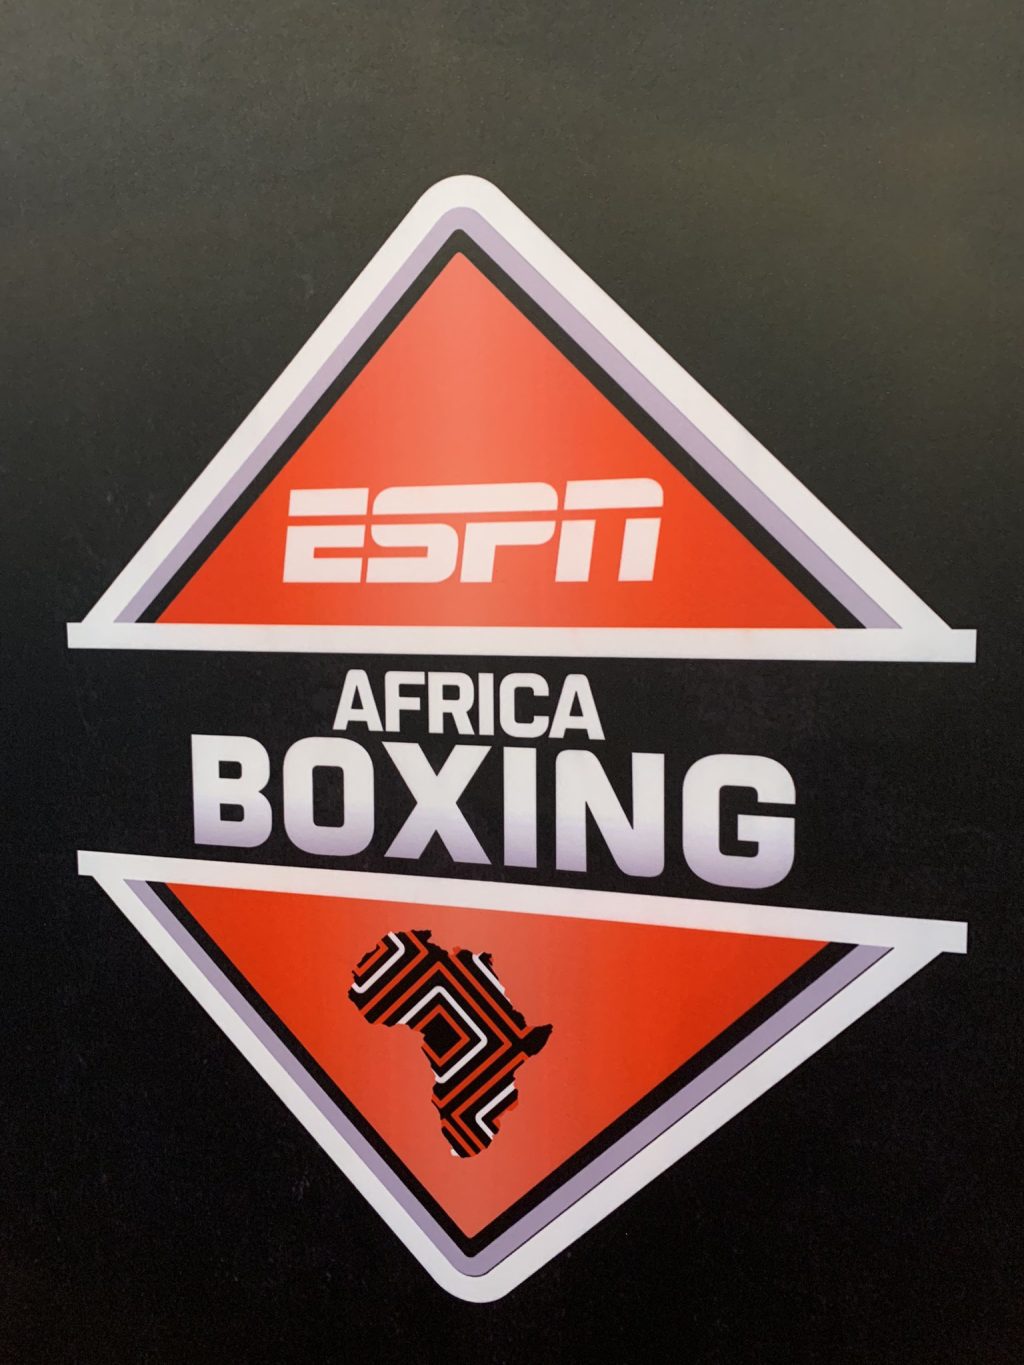 ESPN Africa Boxing